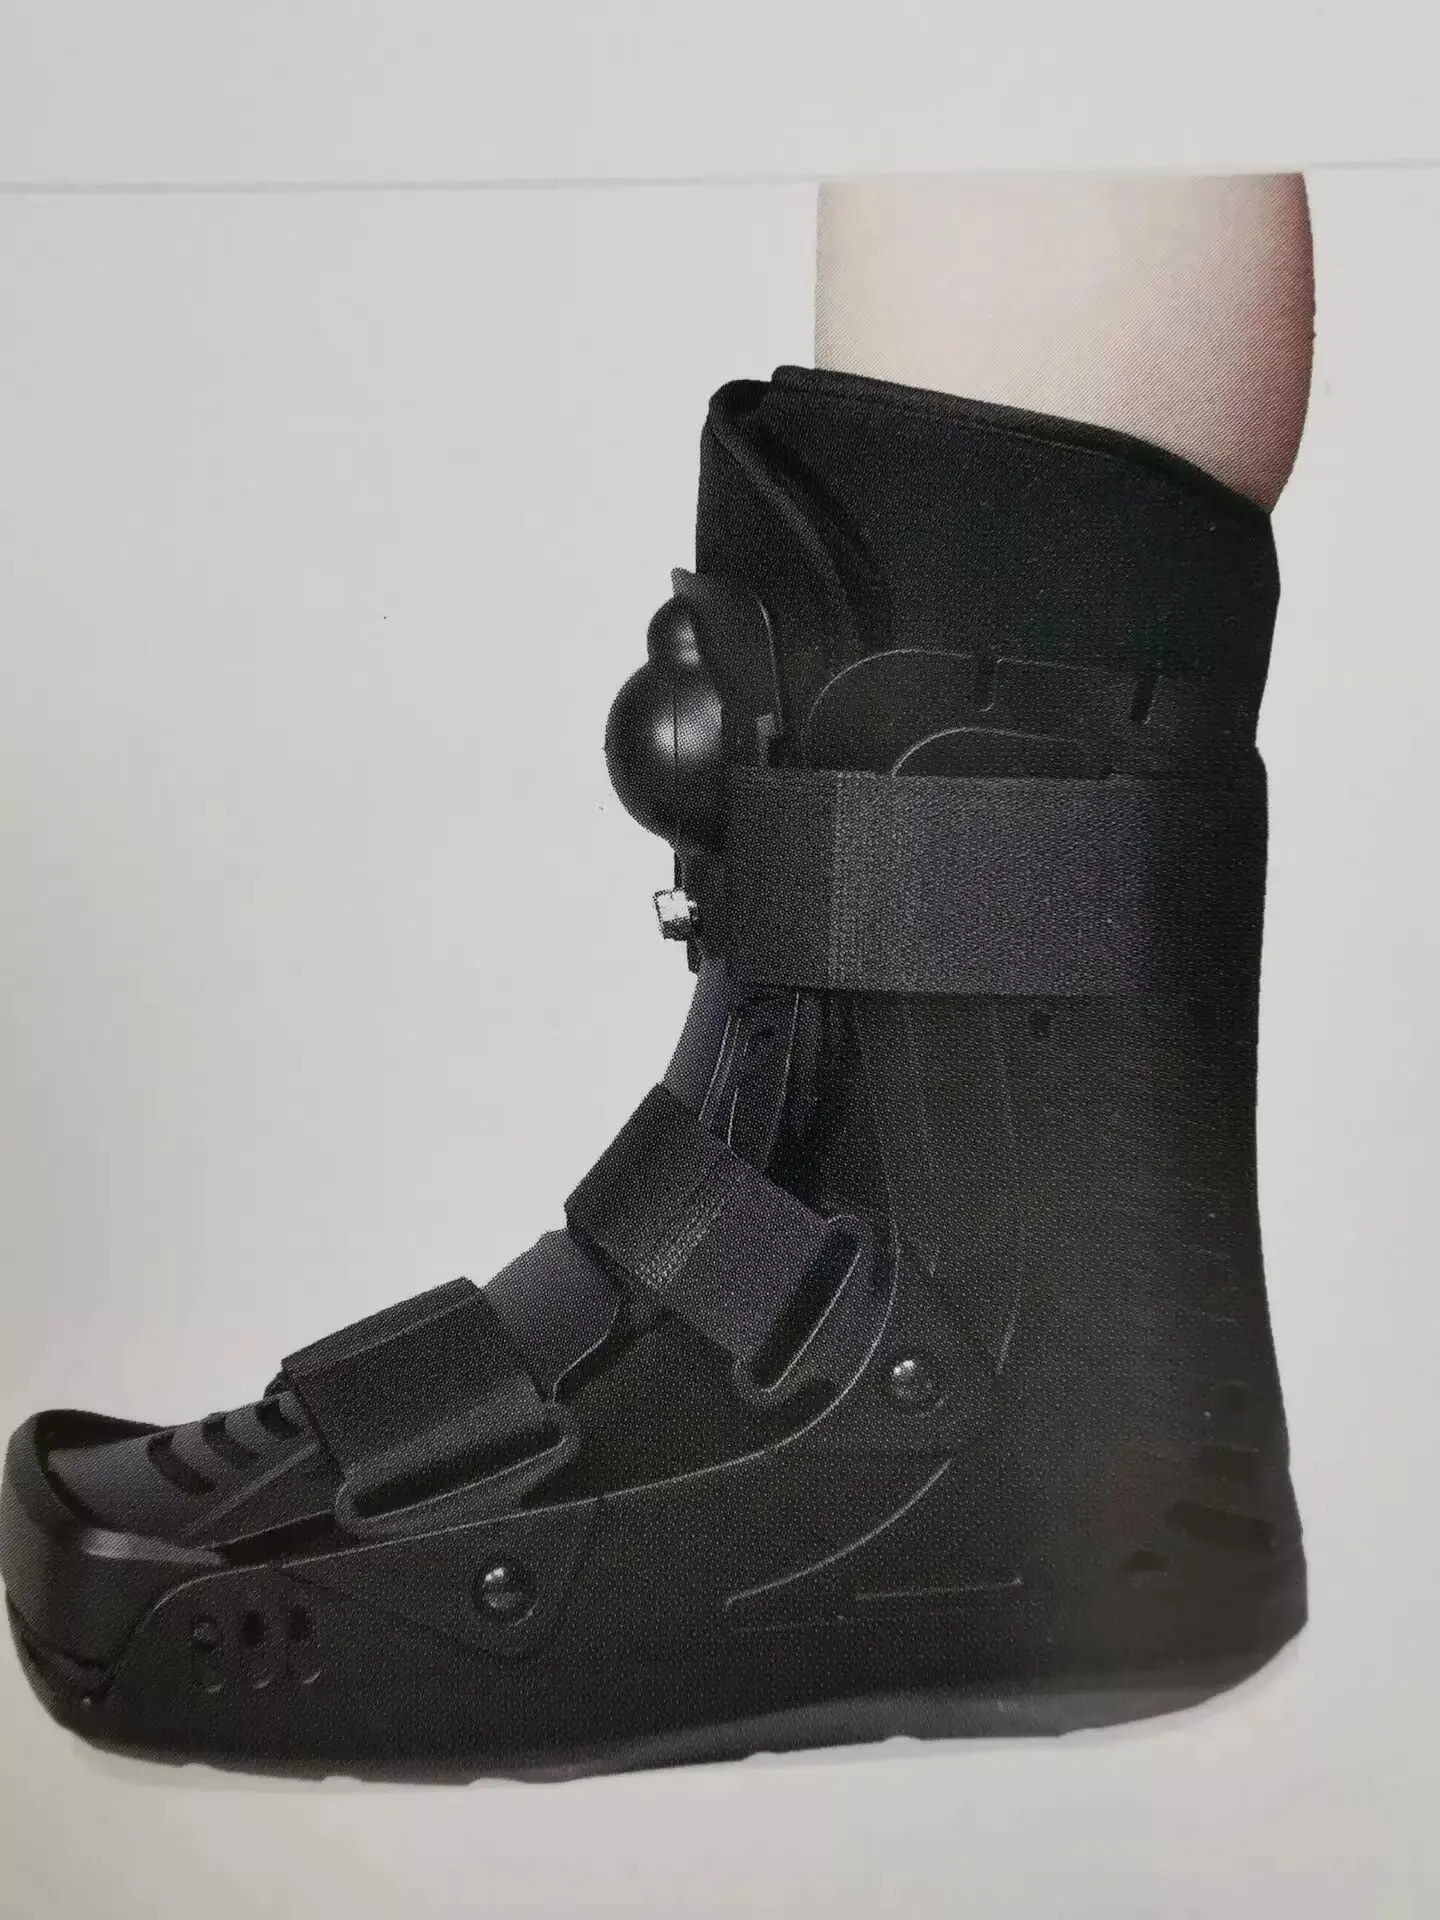 รองเท้าบูตวอล์คเกอร์ปรับได้,รองเท้าทางการแพทย์เท้ากระดูกหักปรับได้รองเท้าบูตช่วยเดิน